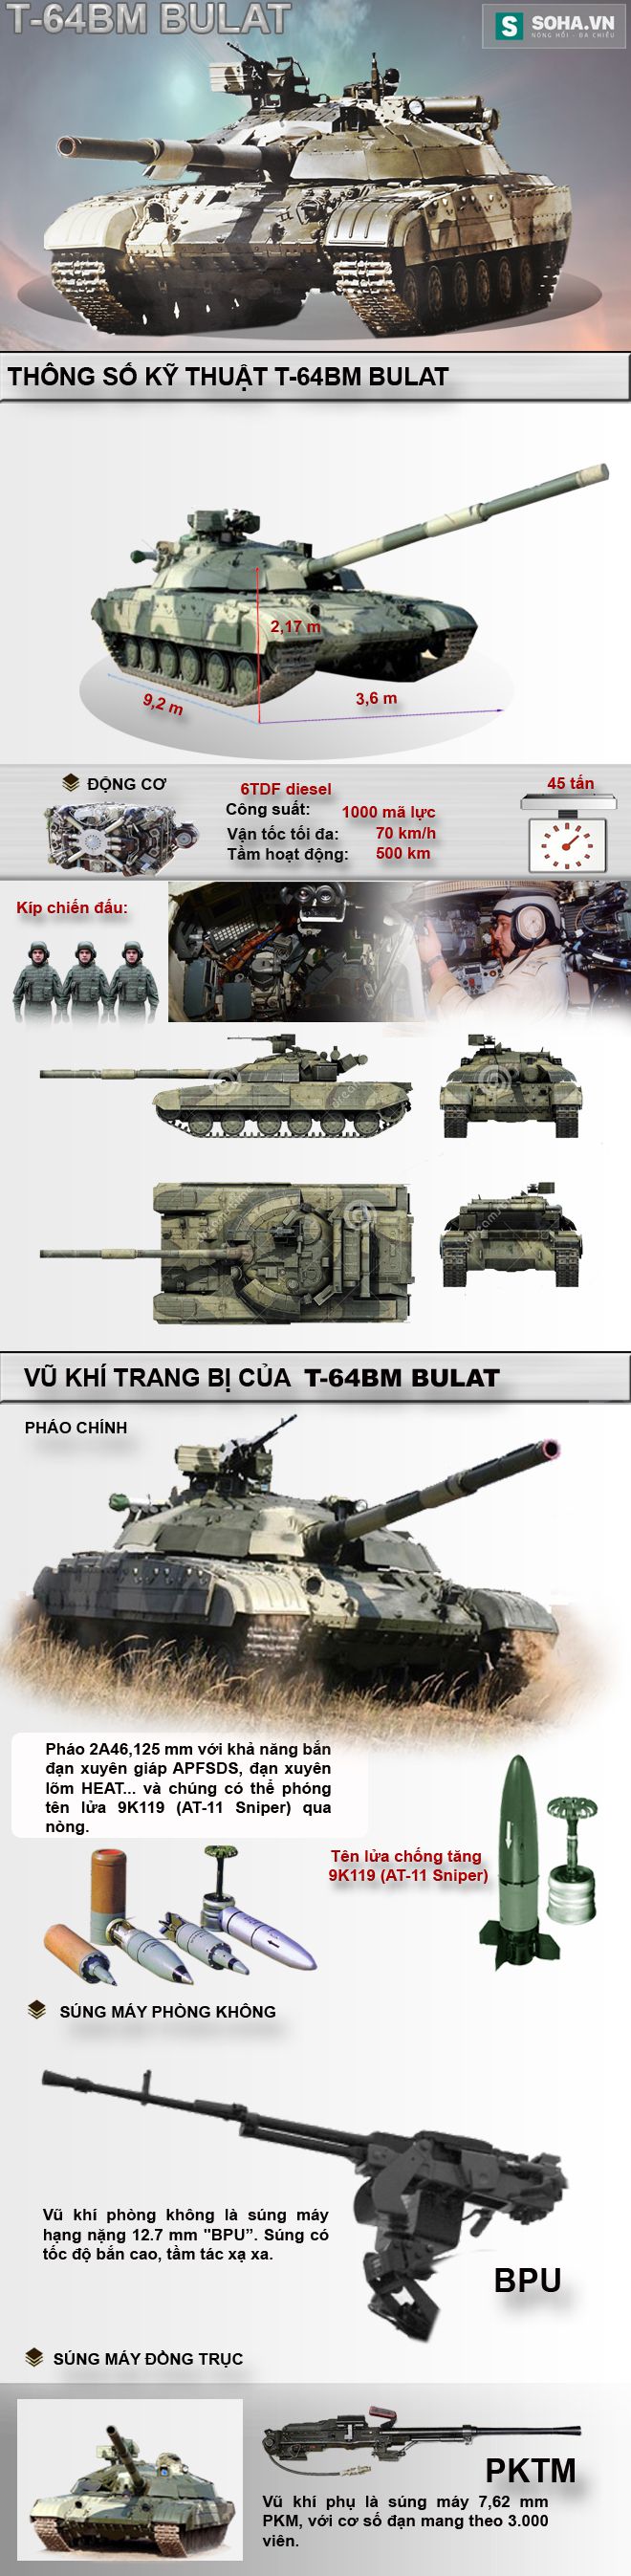 Giá rẻ, tính năng cao - Việt Nam có nên mua ngay xe tăng Bulat? - Ảnh 1.